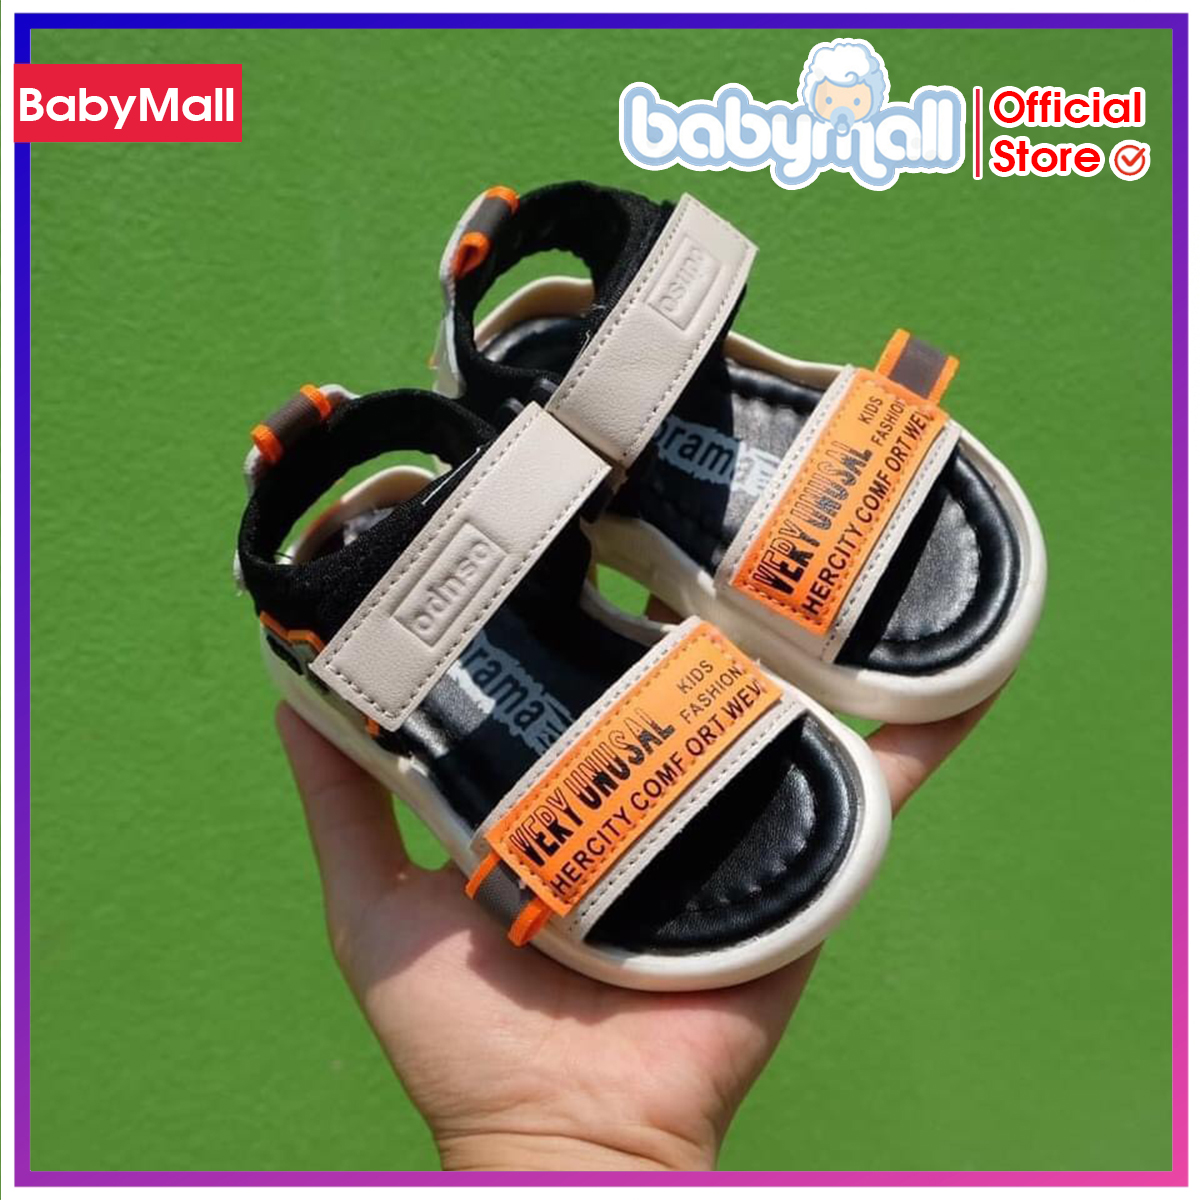 Sandal UNUSAL siêu mềm SD001H, Dép cho bé, Dép tập đi cho Bé Trai và Bé Gái, Sandal bé trai, Sandal bé gái, Dép quai hậu cho bé - TOP sản phẩm BabyMall Vietnam